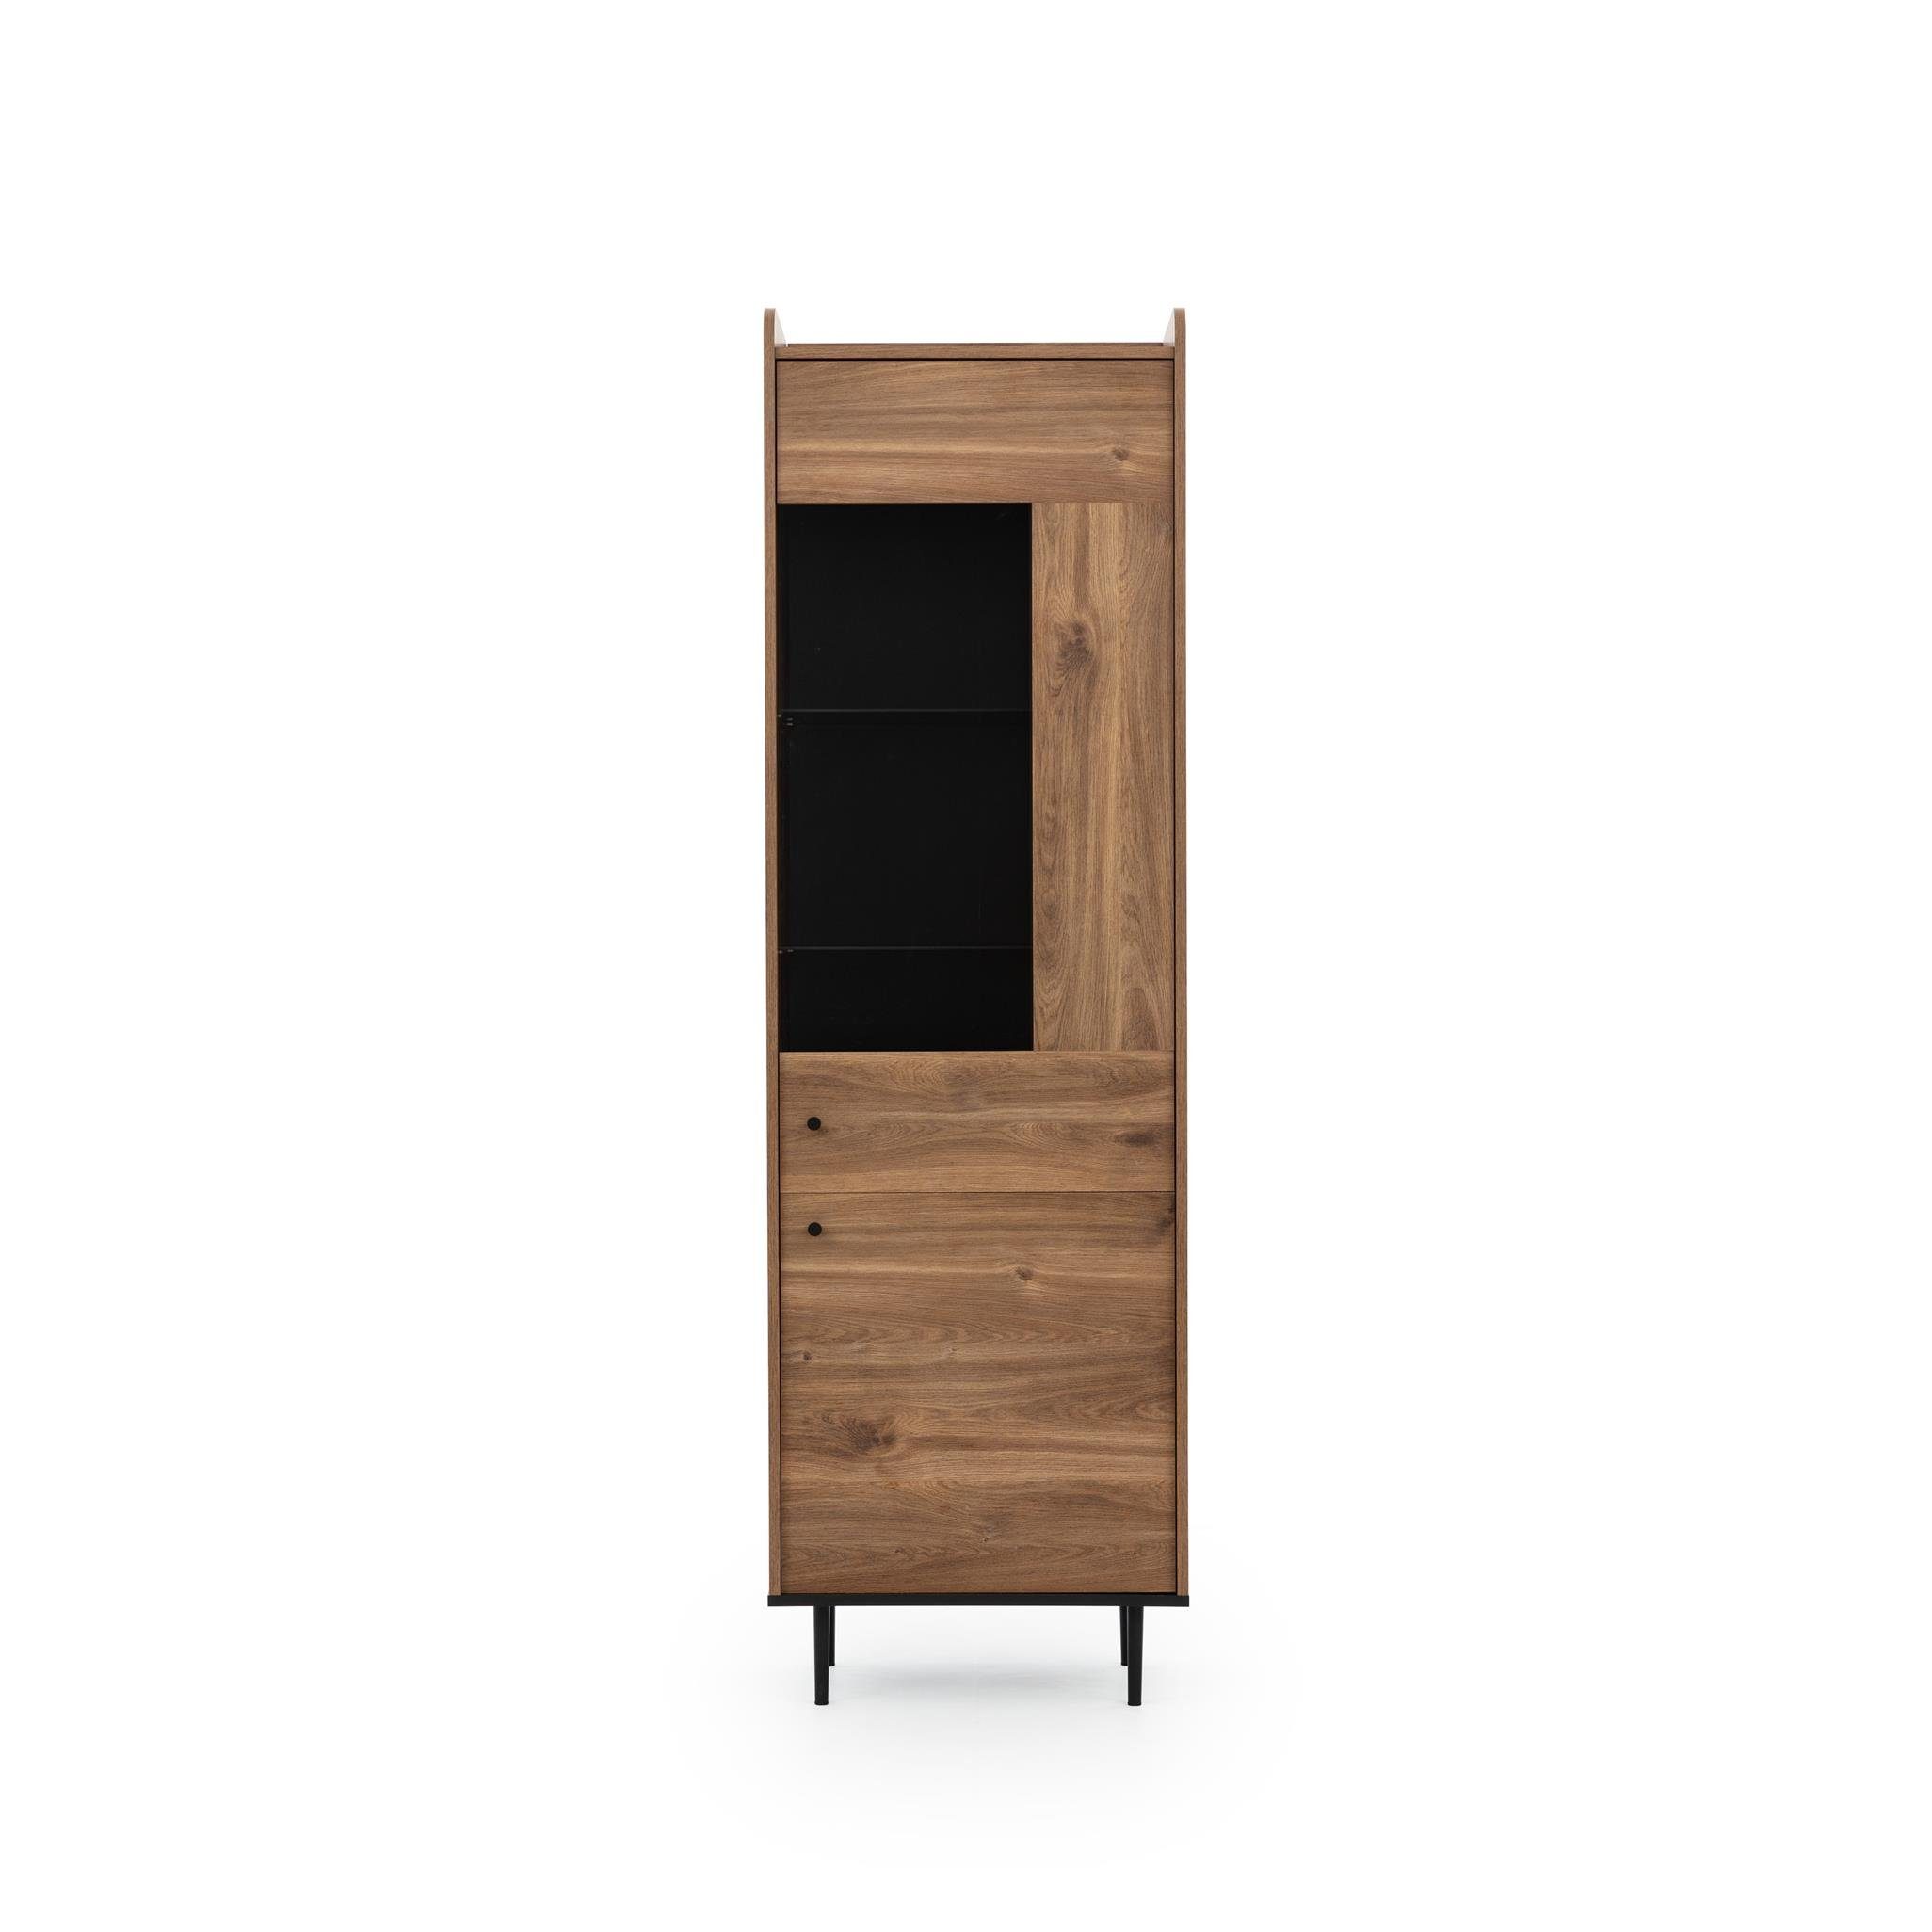 VASINIE Mediawand Brandy-Castello-Holzes, 4-teilige Loft-Stil Furnix Design modernes im Wohnwand